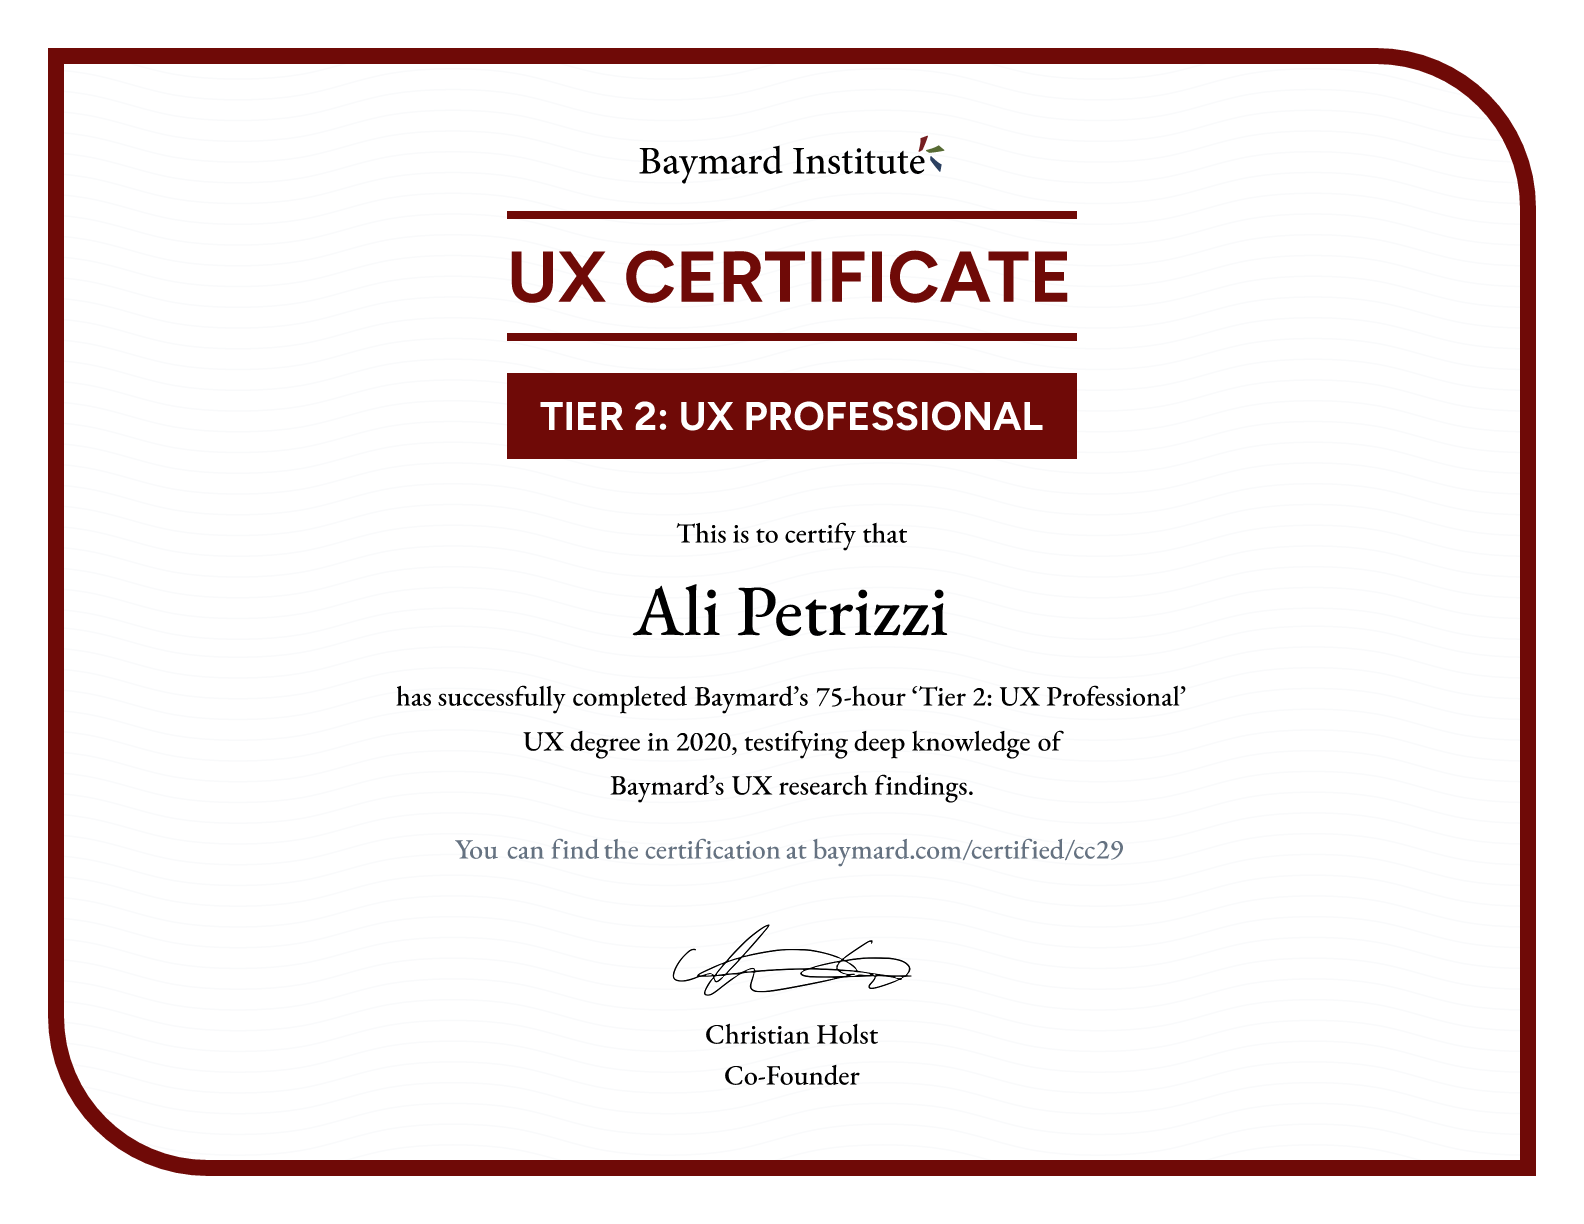 Ali Petrizzi’s certificate